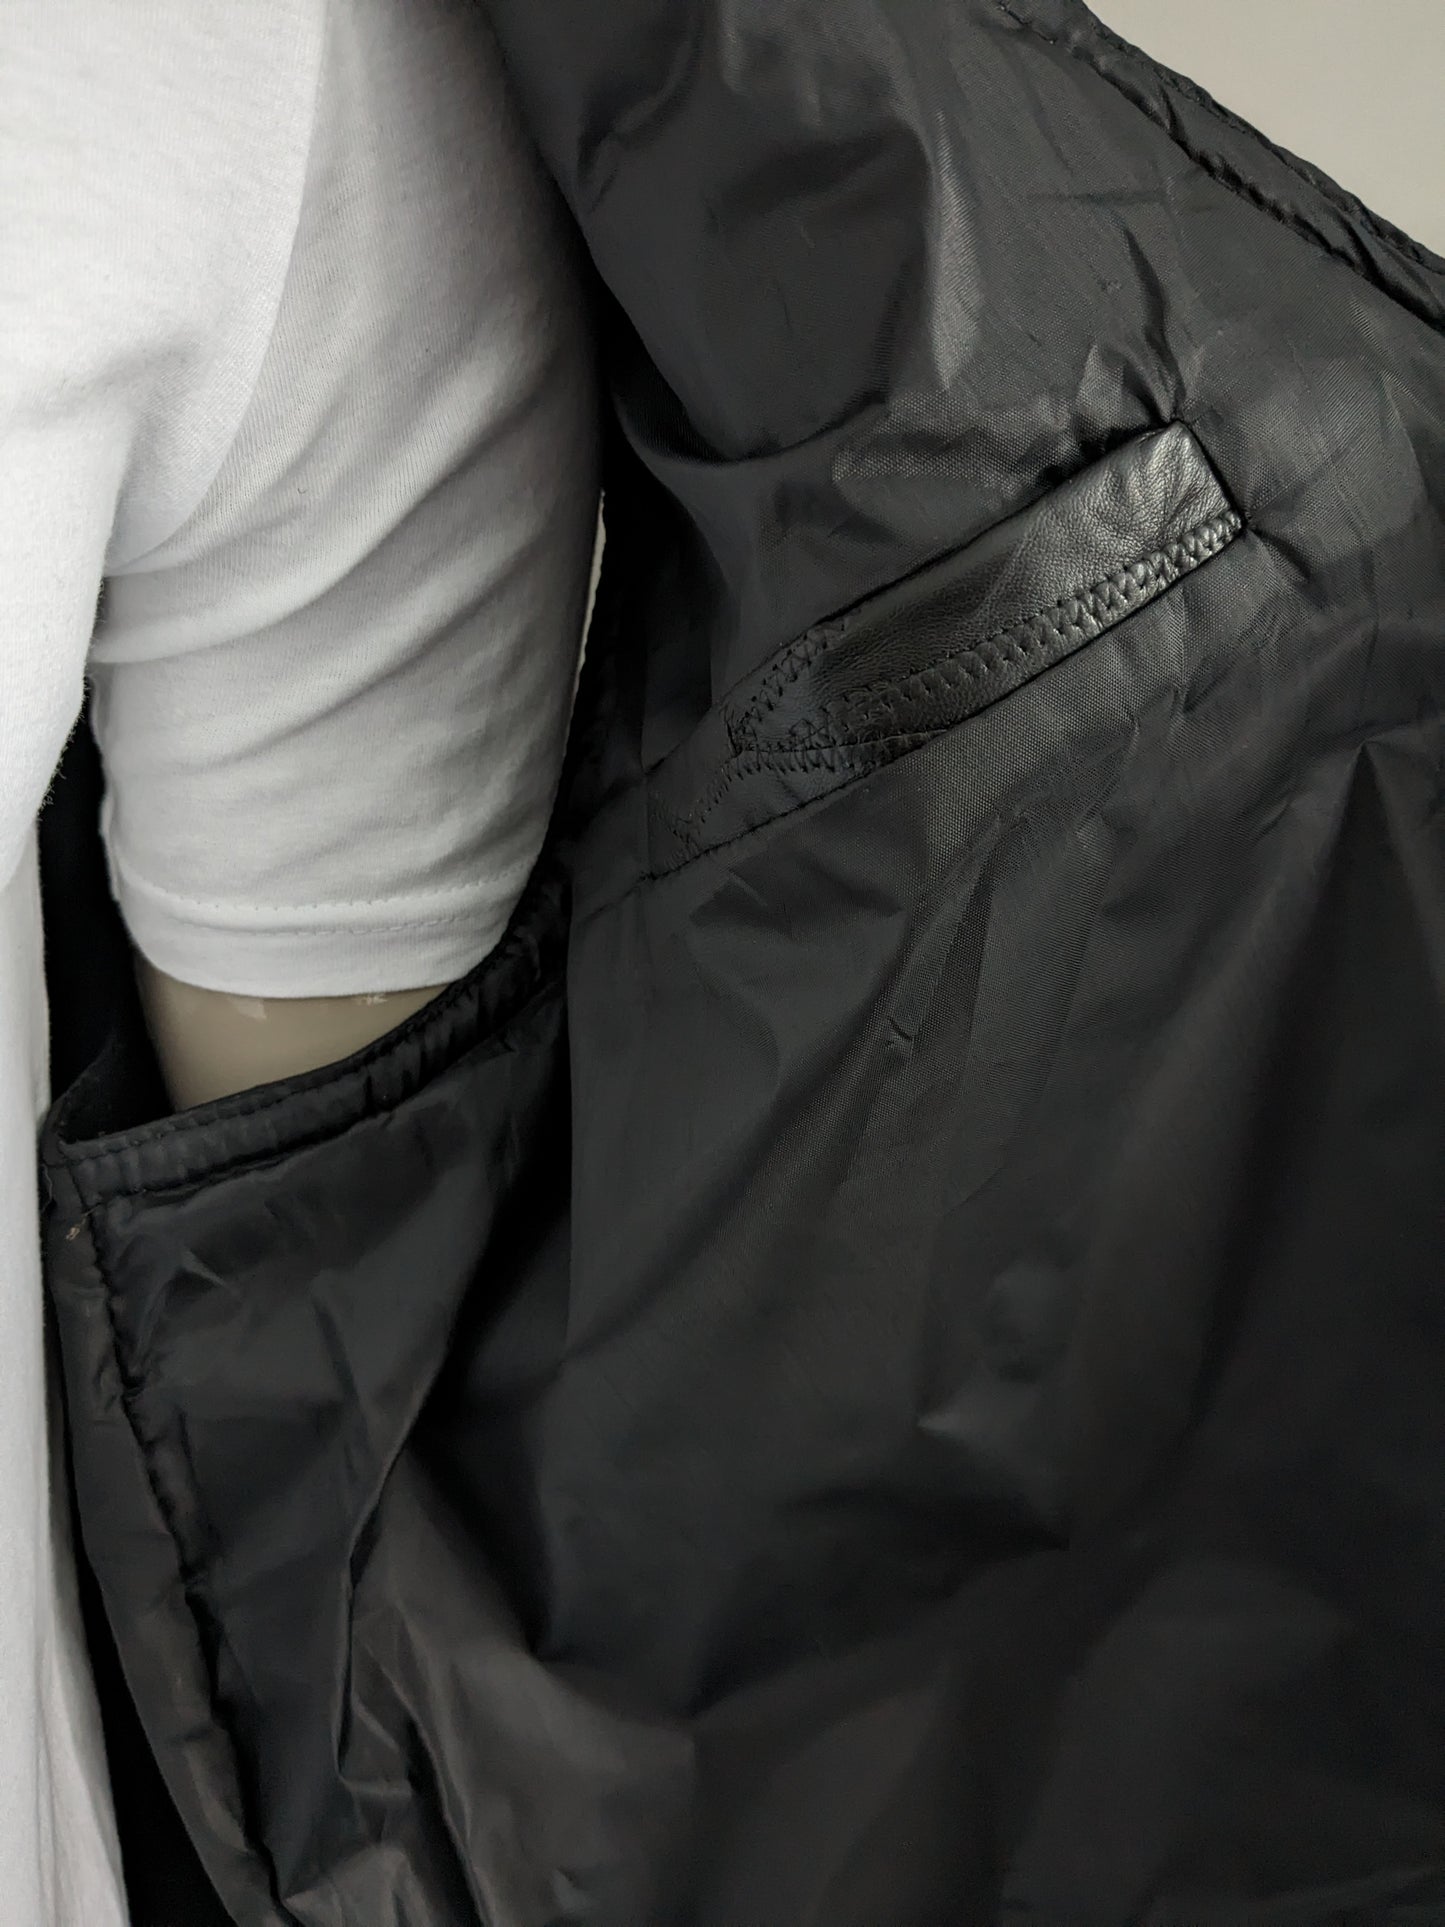 Leder doppelseitige Weste mit Pressebutter und Flecken. Mit innerer Tasche. Größe 3xl / 4xl